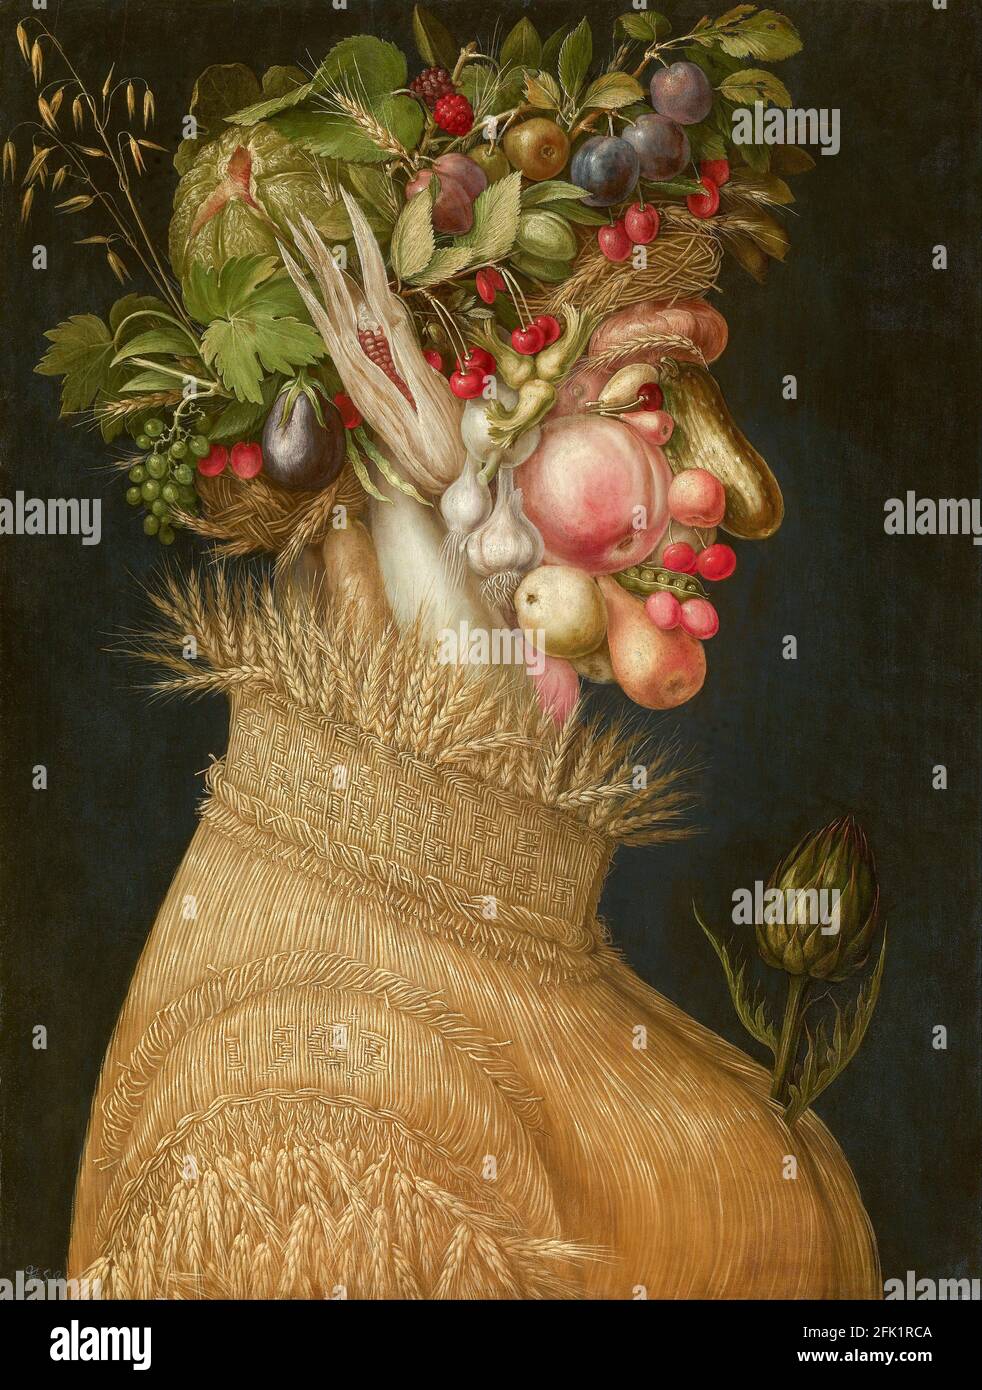 Giuseppe Arcimboldo, The Summer, 1563, oil on panel, Art History Museum, Vienna, Austria Stock Photo